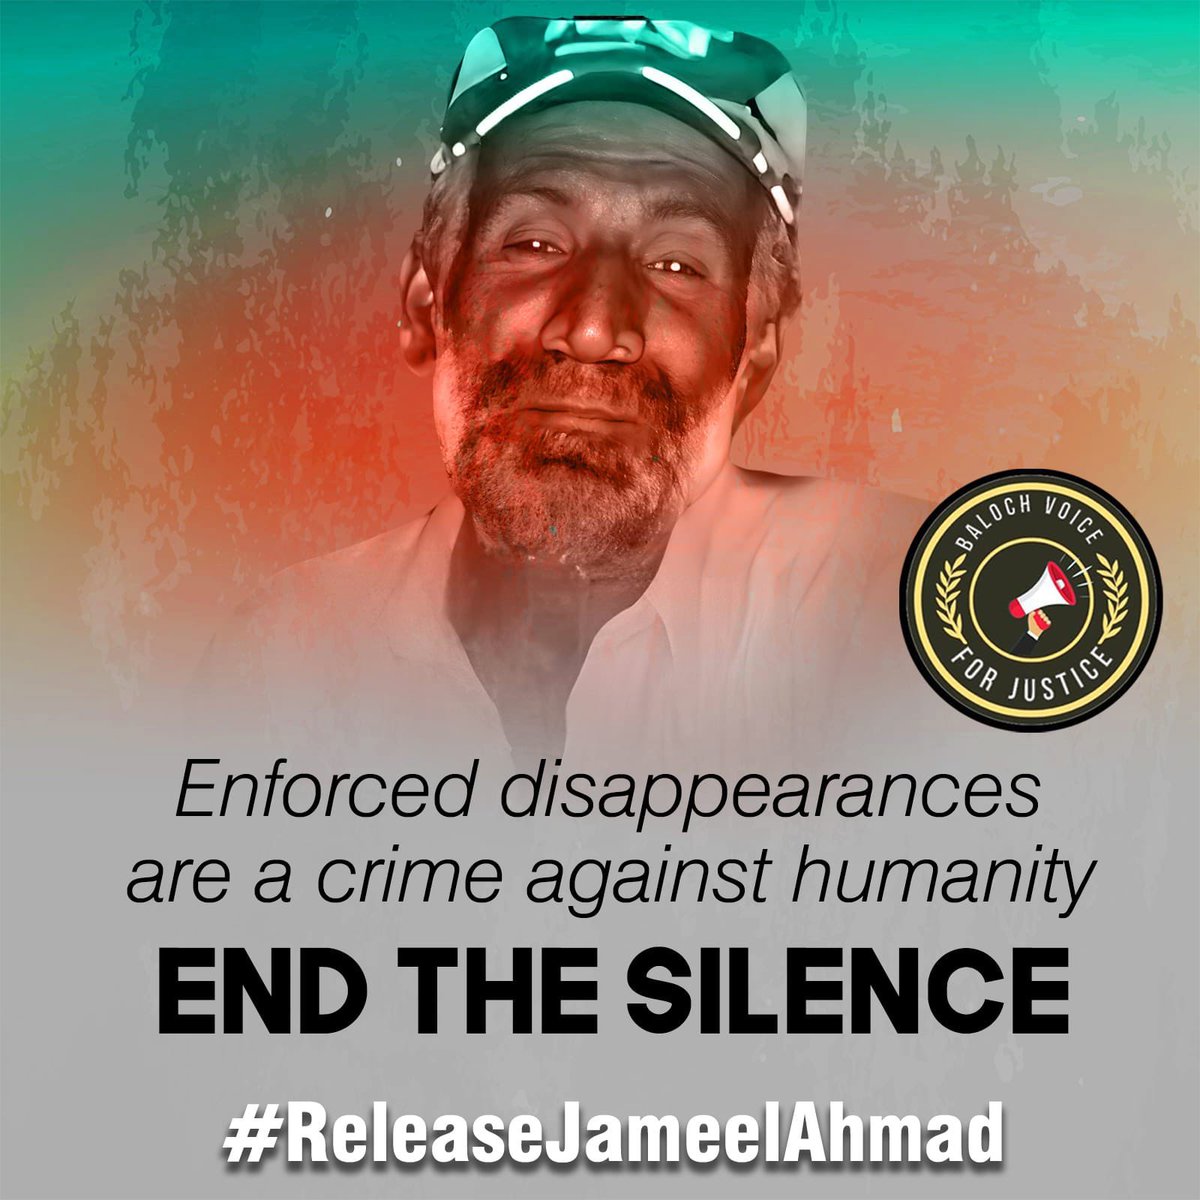 آواران سے تعلق رکھنے والے جمیل احمد گزشتہ گیارہ سالوں سے جبری گمشدگی کا شکار ہے اور جمیل کے خاندان والے ایک دہائی سے زیادہ عرصے سے پریشانیوں اور زہنی ازیتوں میں مبتلا ہیں لیکن جمیل کوتاحال منظرعام پر نہیں لایا گیا۔ ایک بنیادی مطالبہ ہیکہ ہمارے گمشدہ لوگوں کو صرف عدالتوں میں پیش…